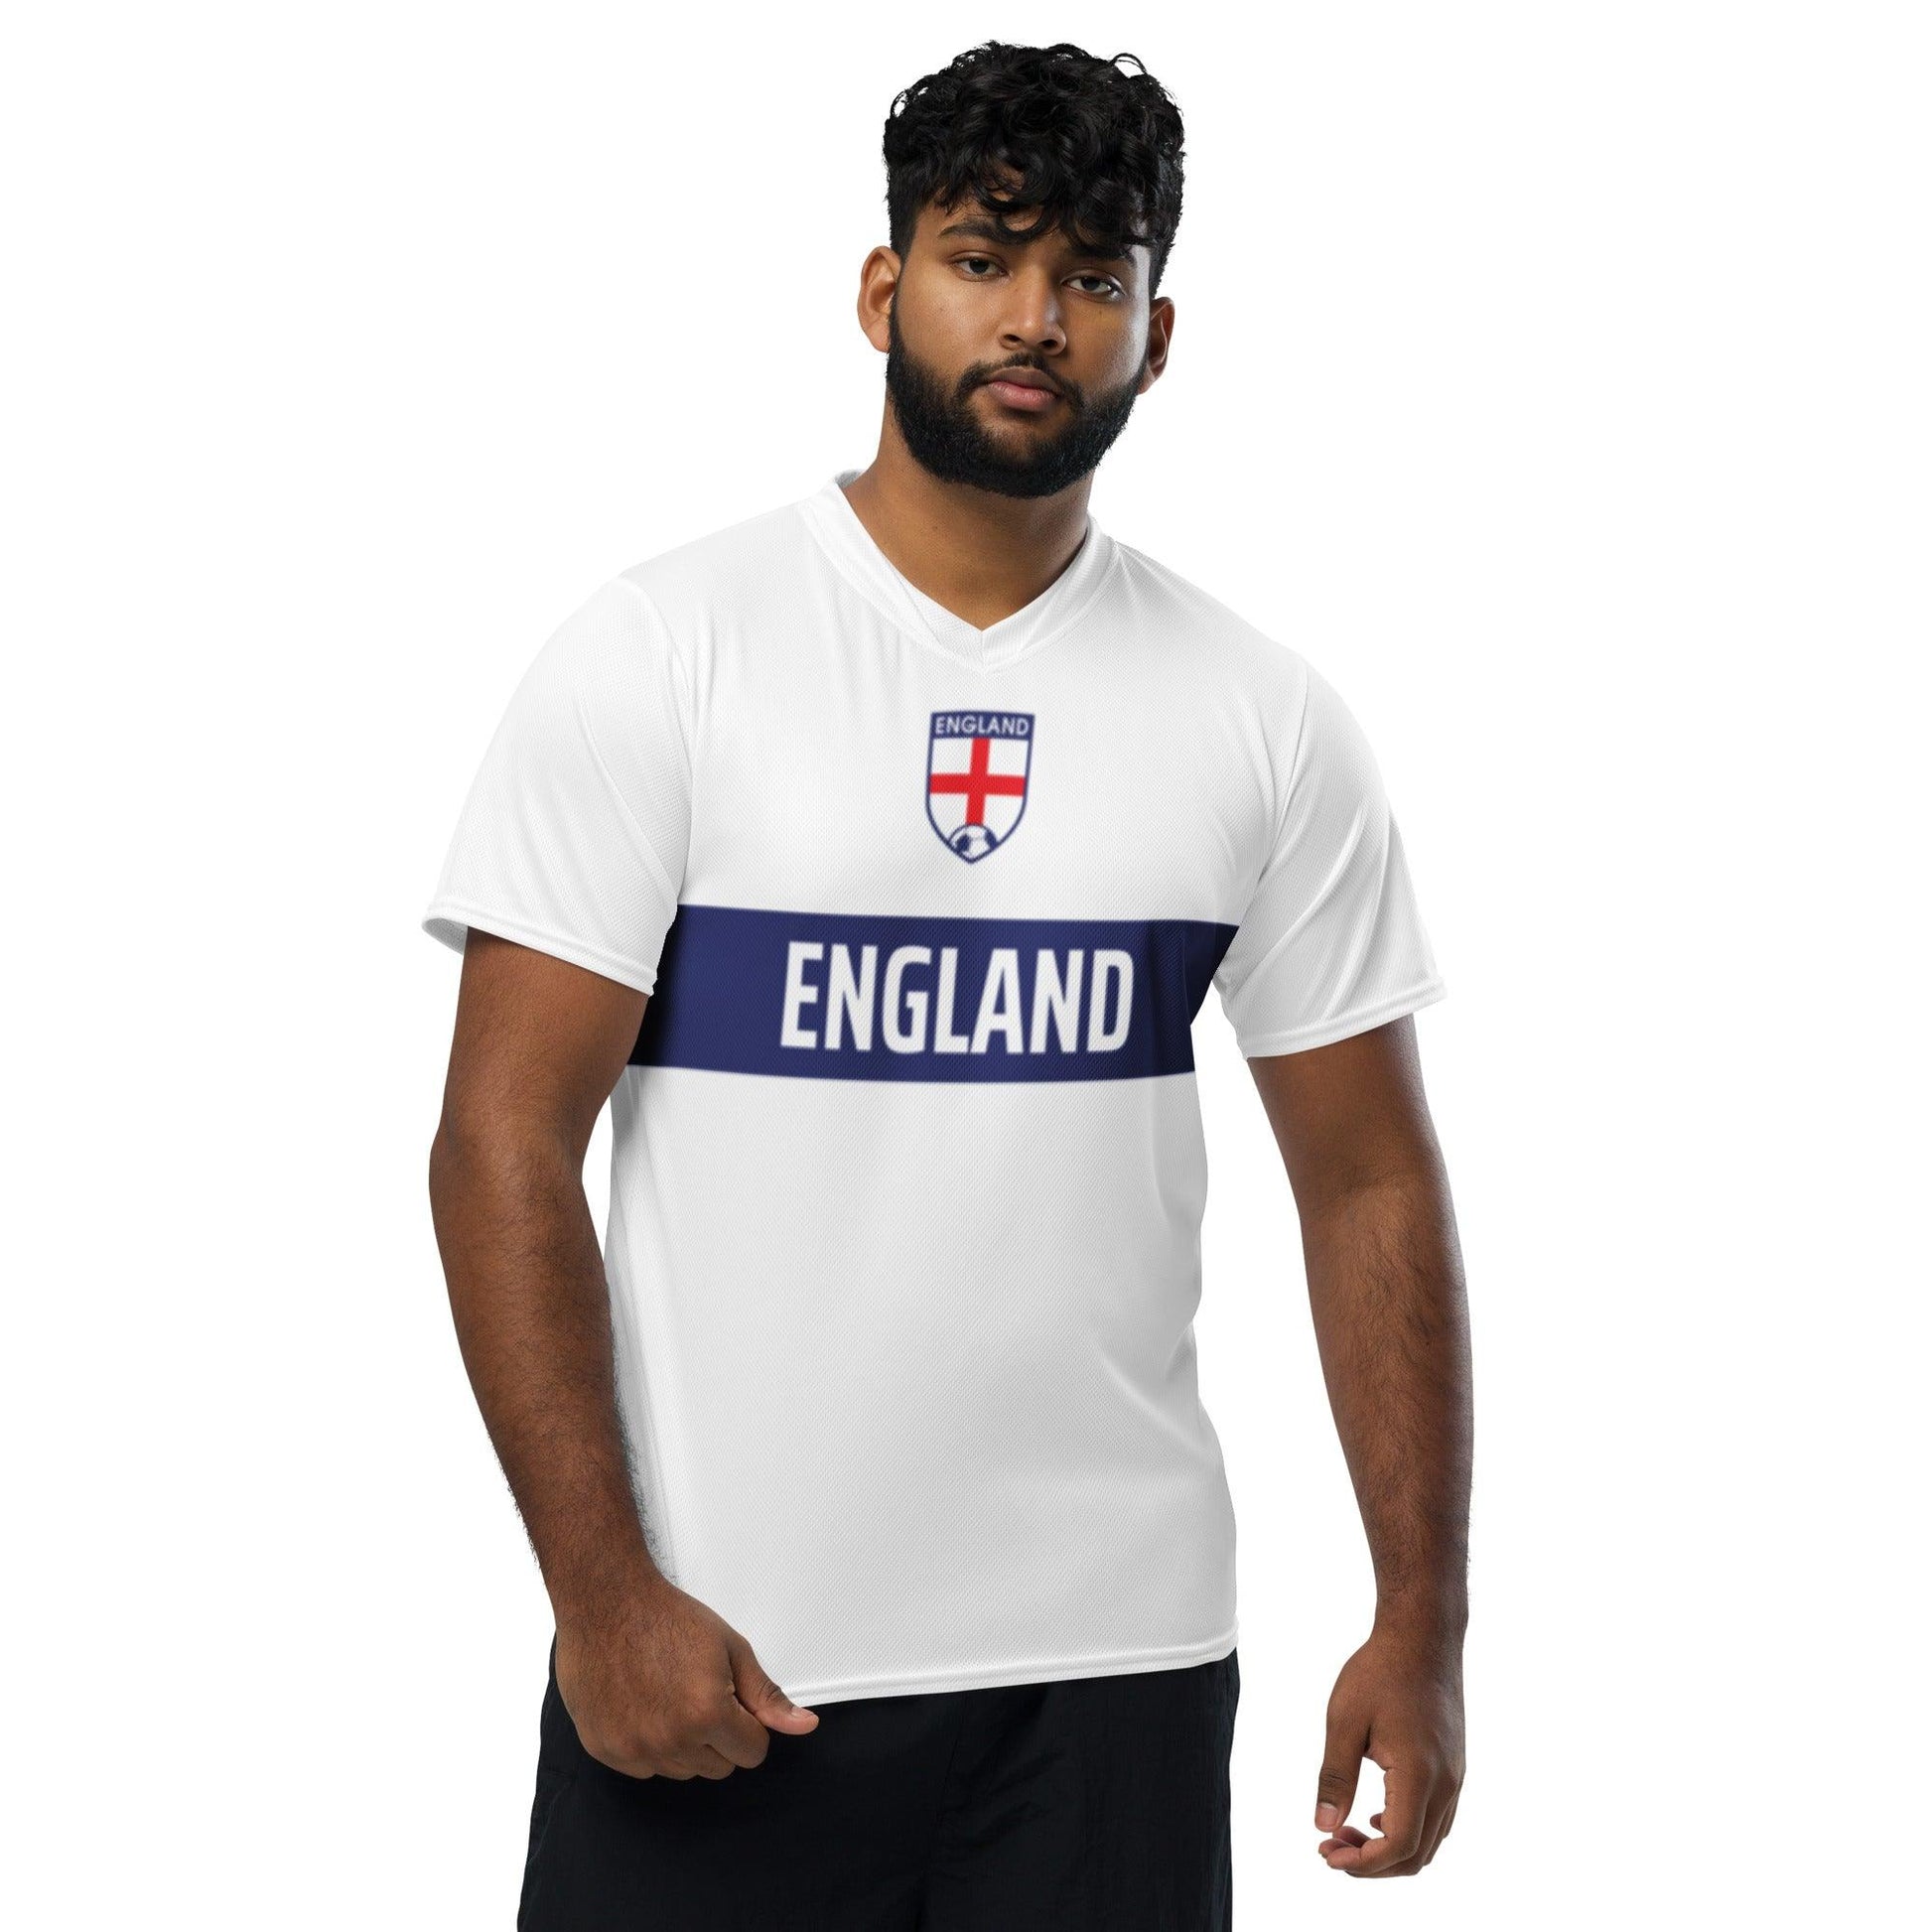 Engeland Voetbalshirt Thuis - Perfect voor fans van het nationale team